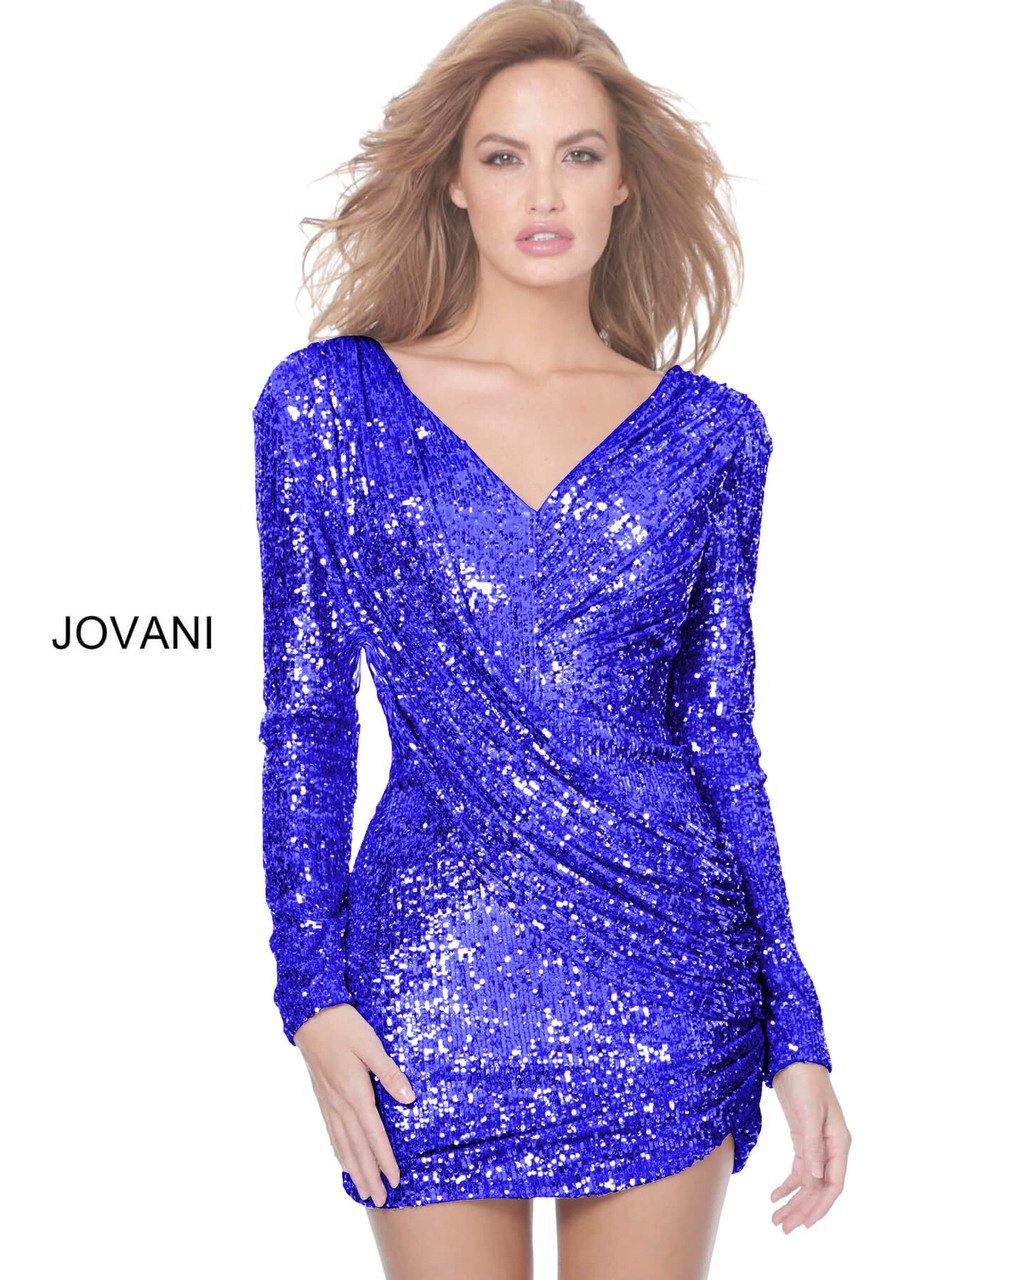 Jovani Cowl Back Sequin Short Dress 03937 - The Dress Outlet